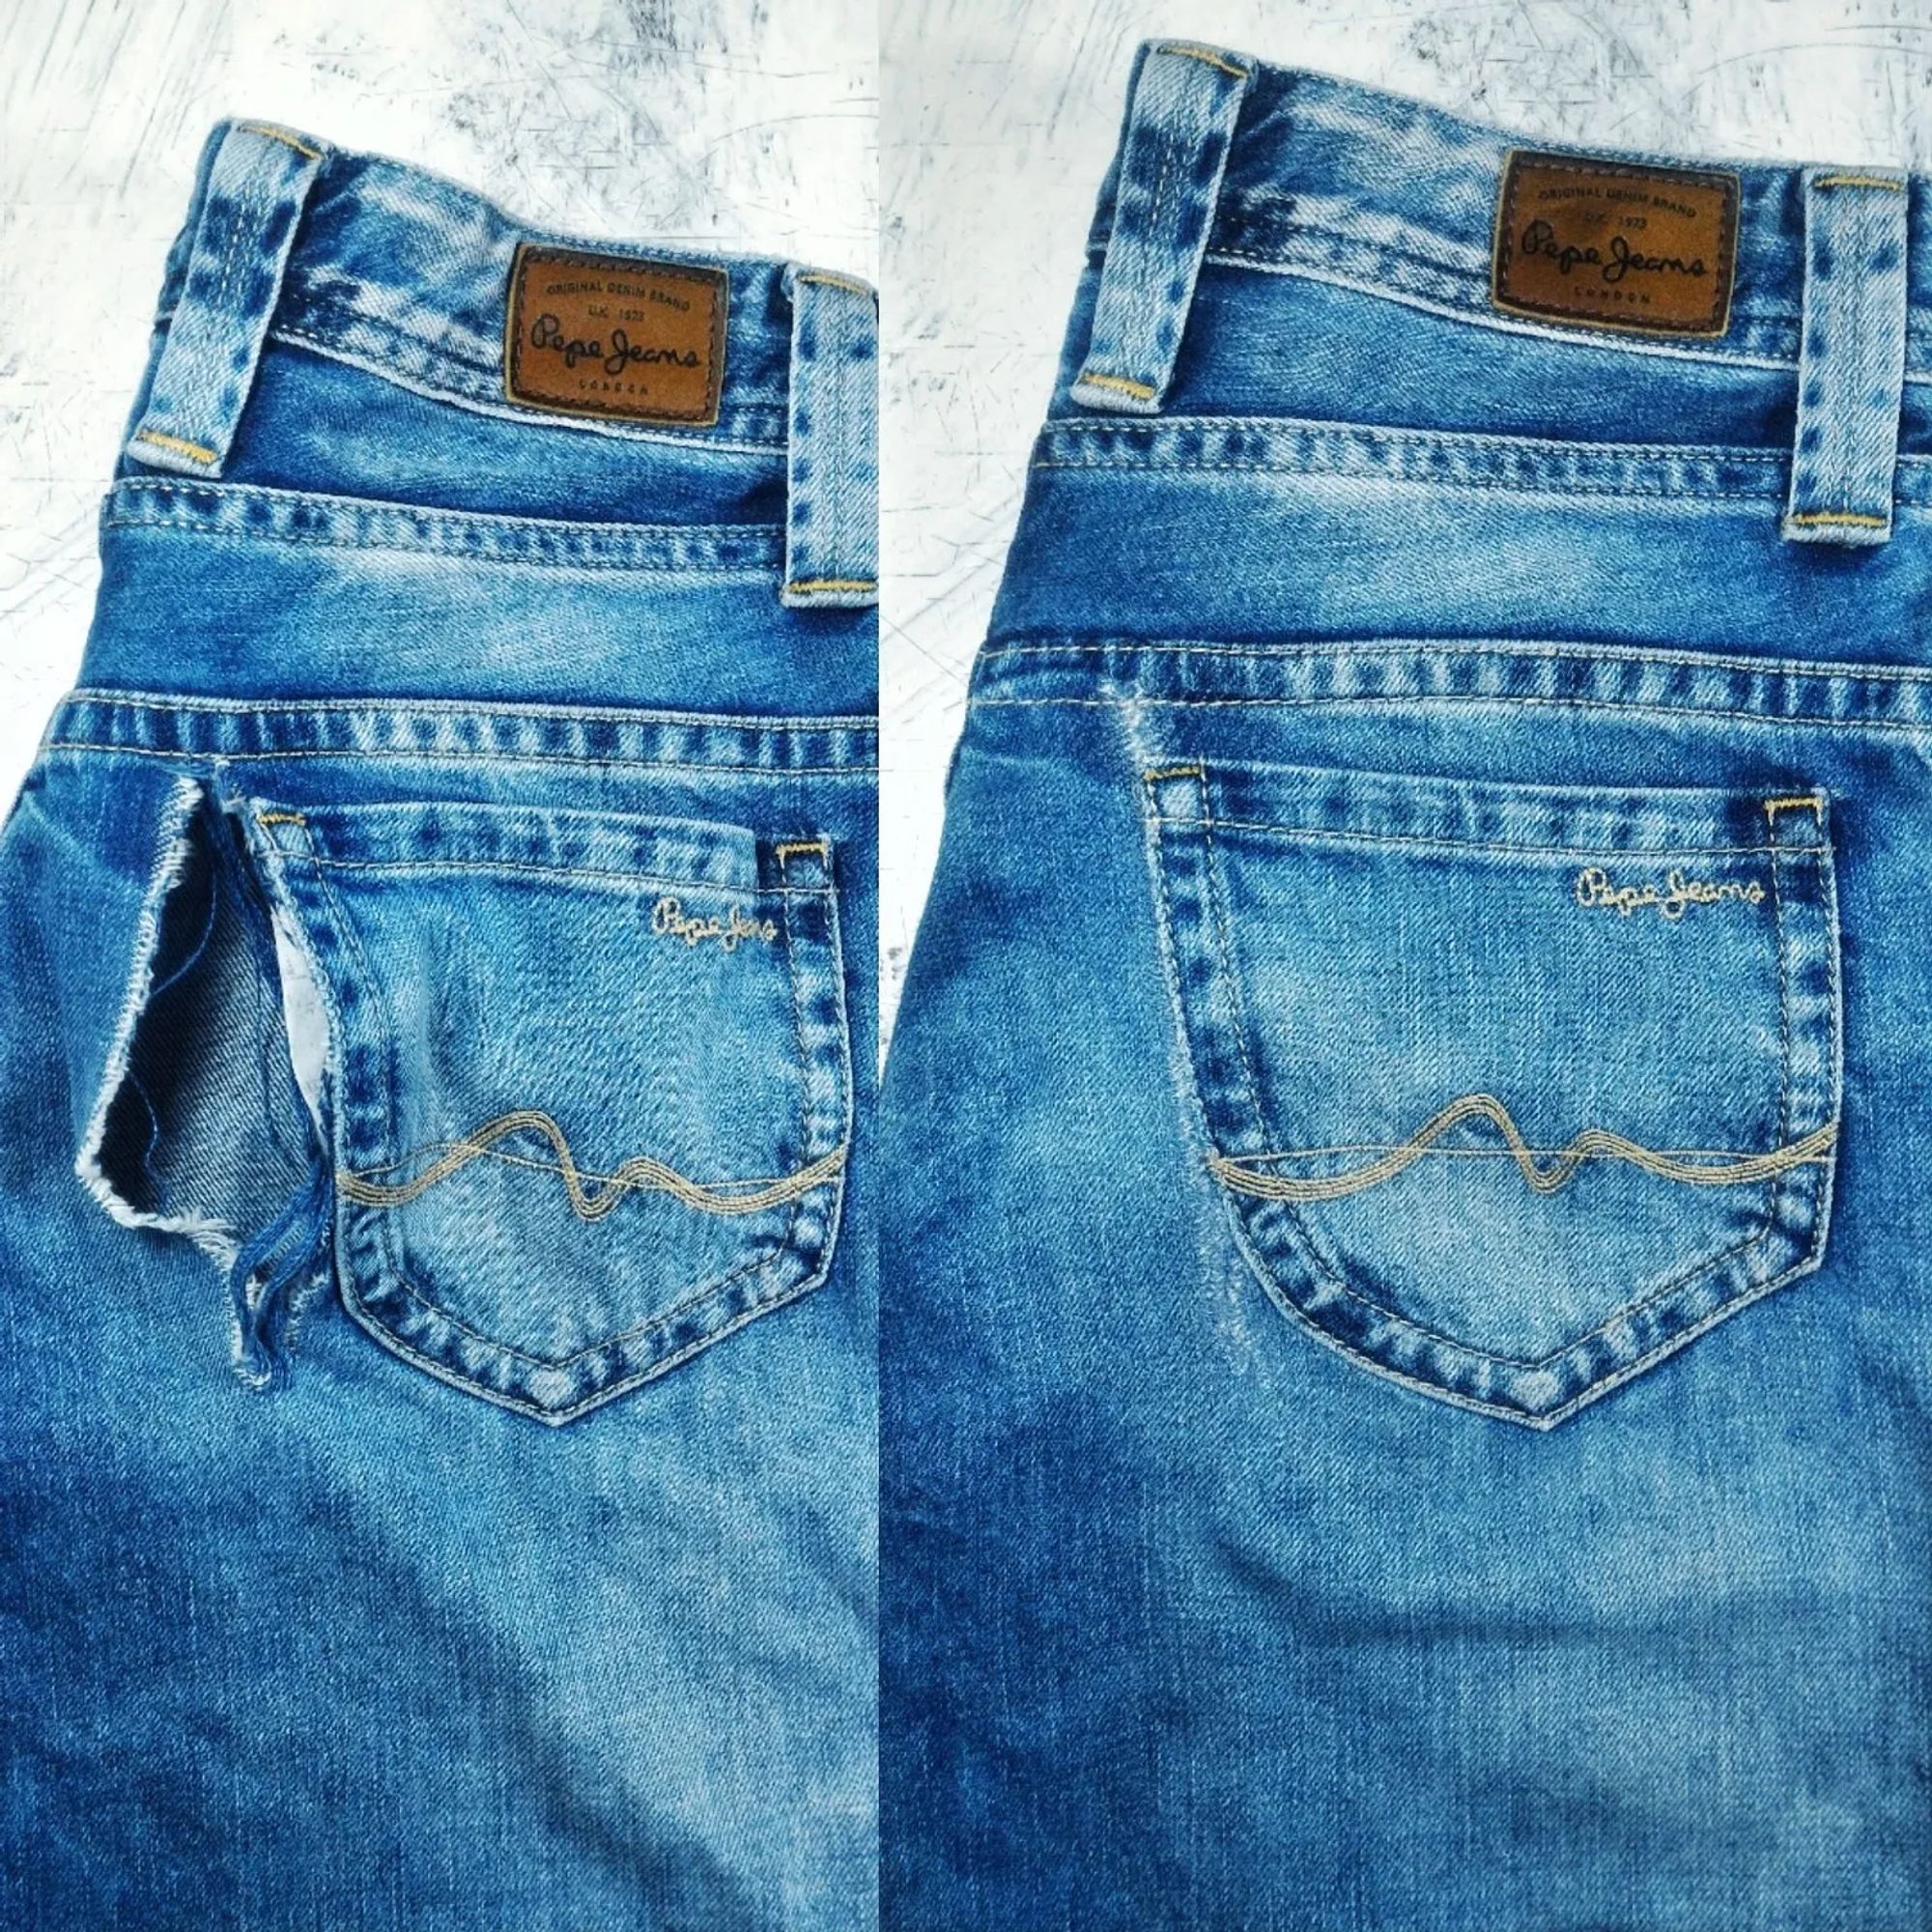 Починить джинсы